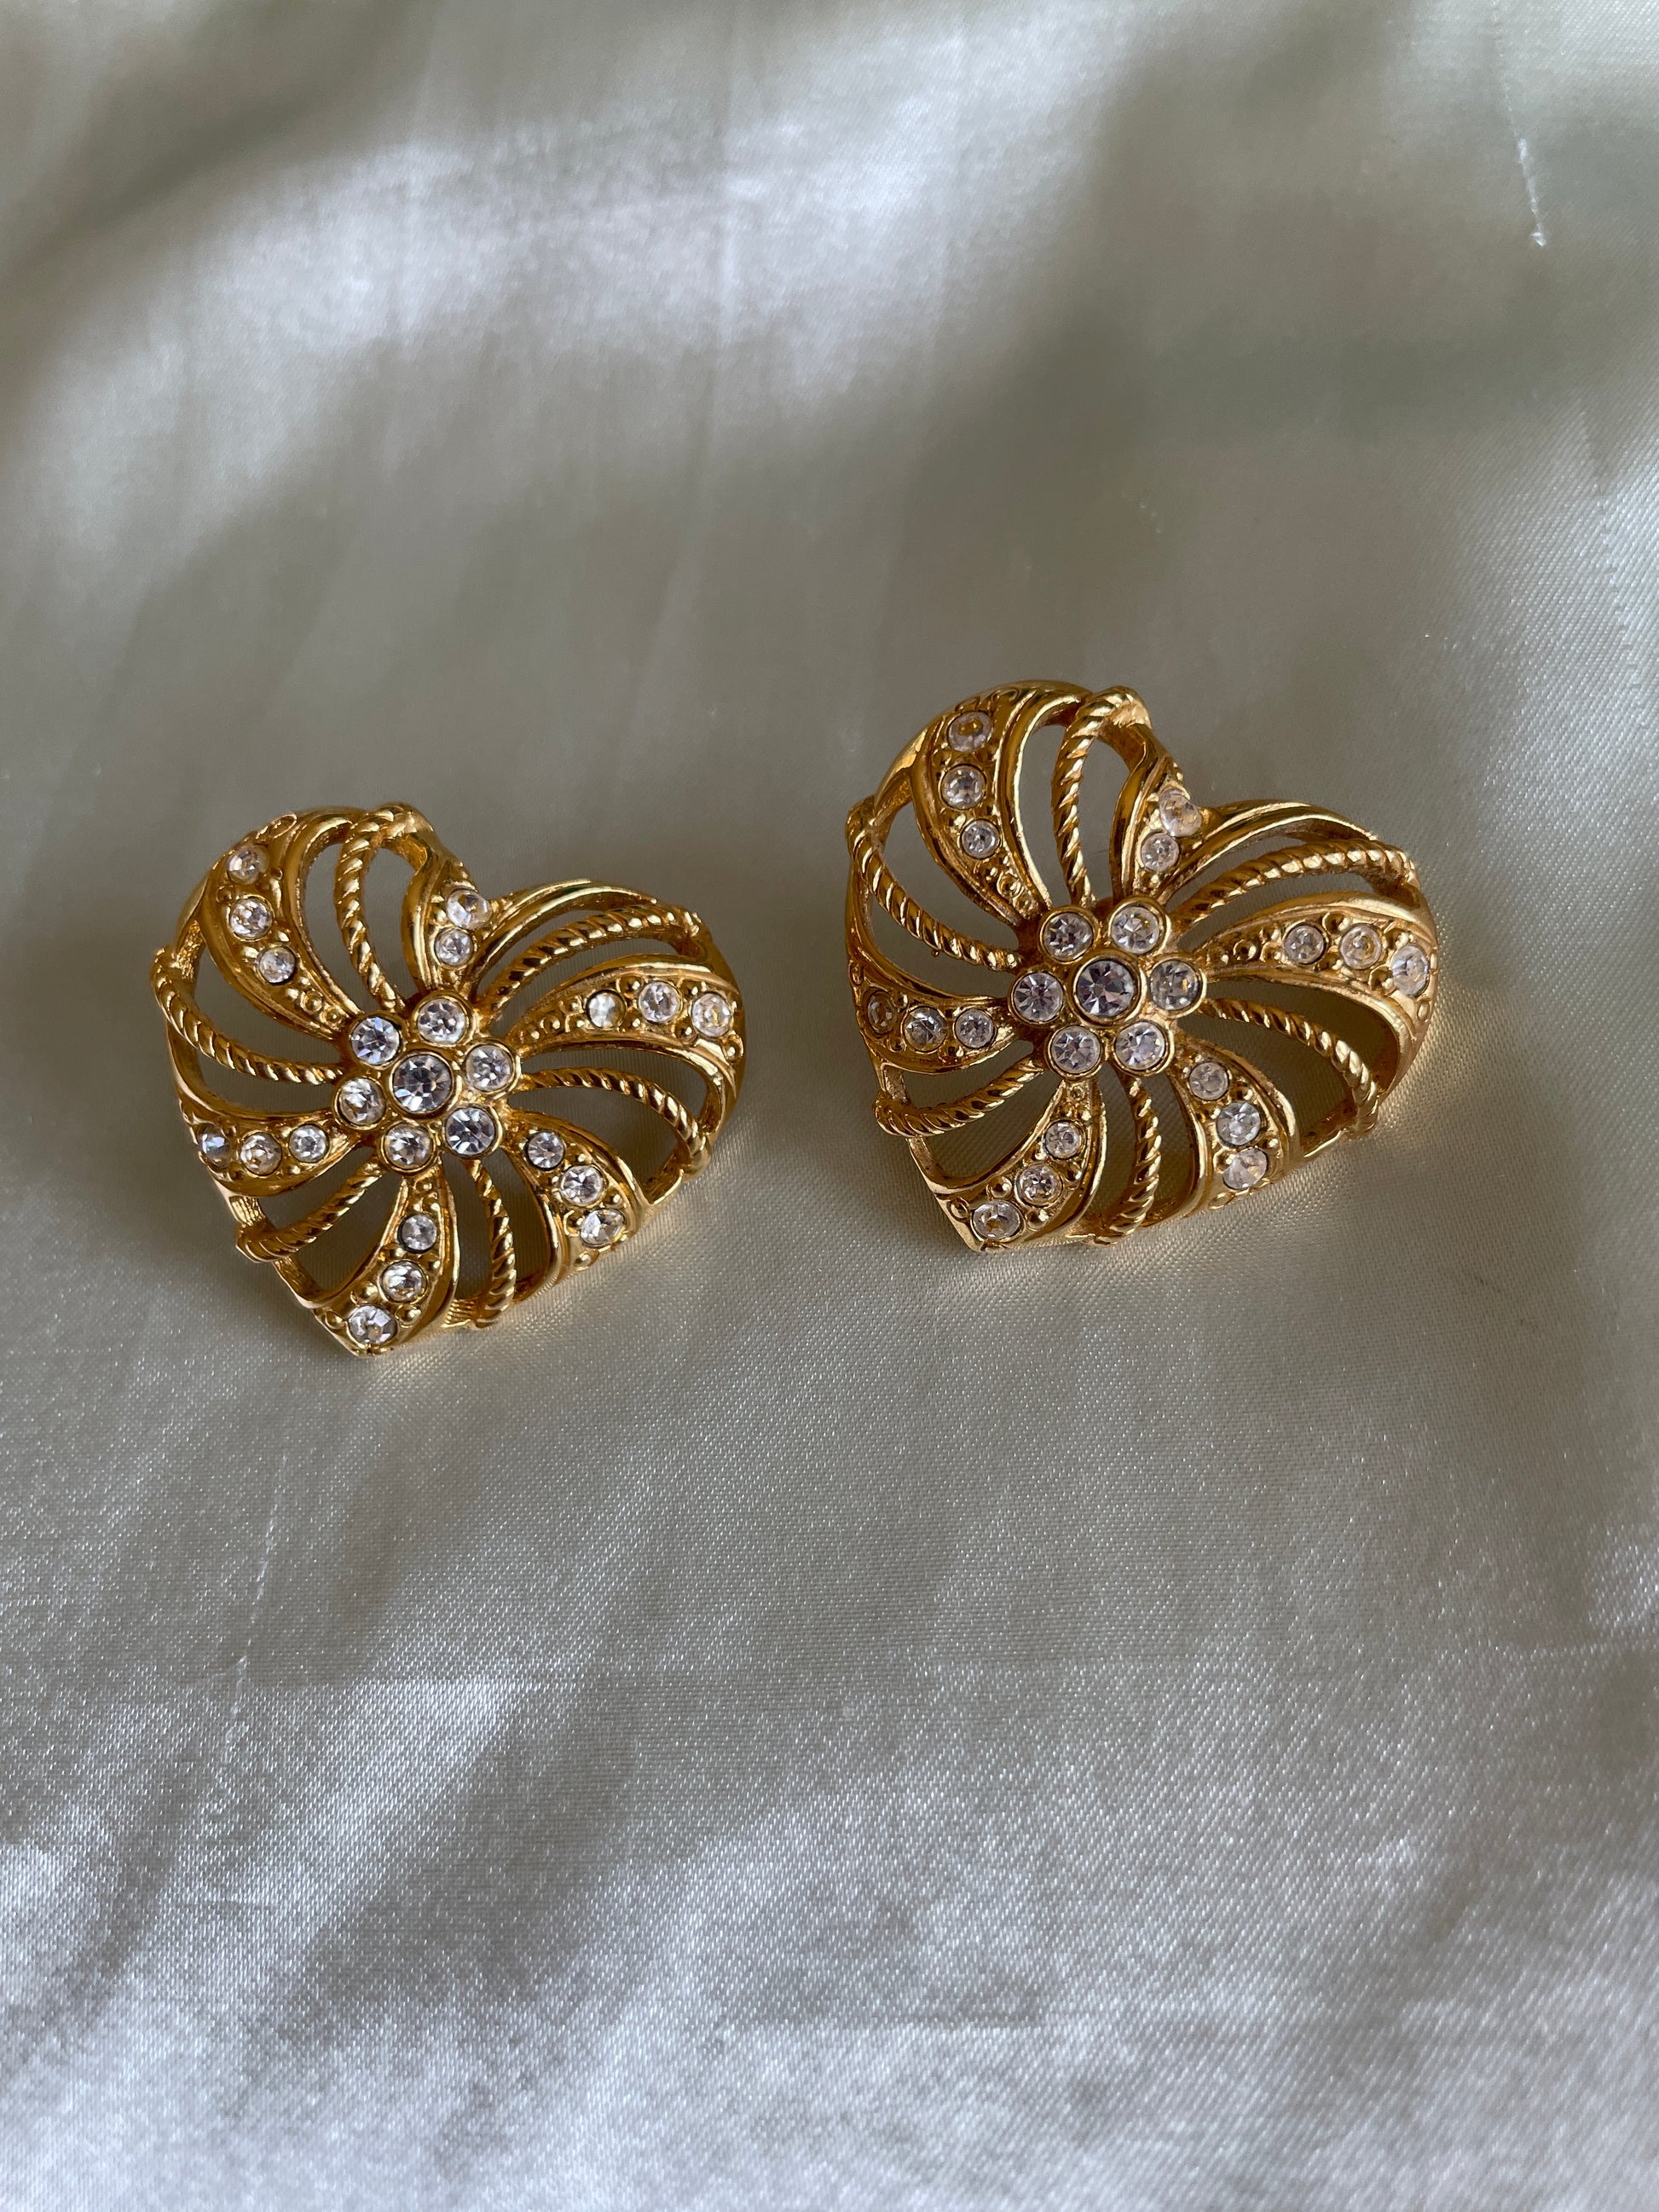 Heart pierced earrings  Sparkly Gold Tone Rhinestone 2000s Pierced Earrings